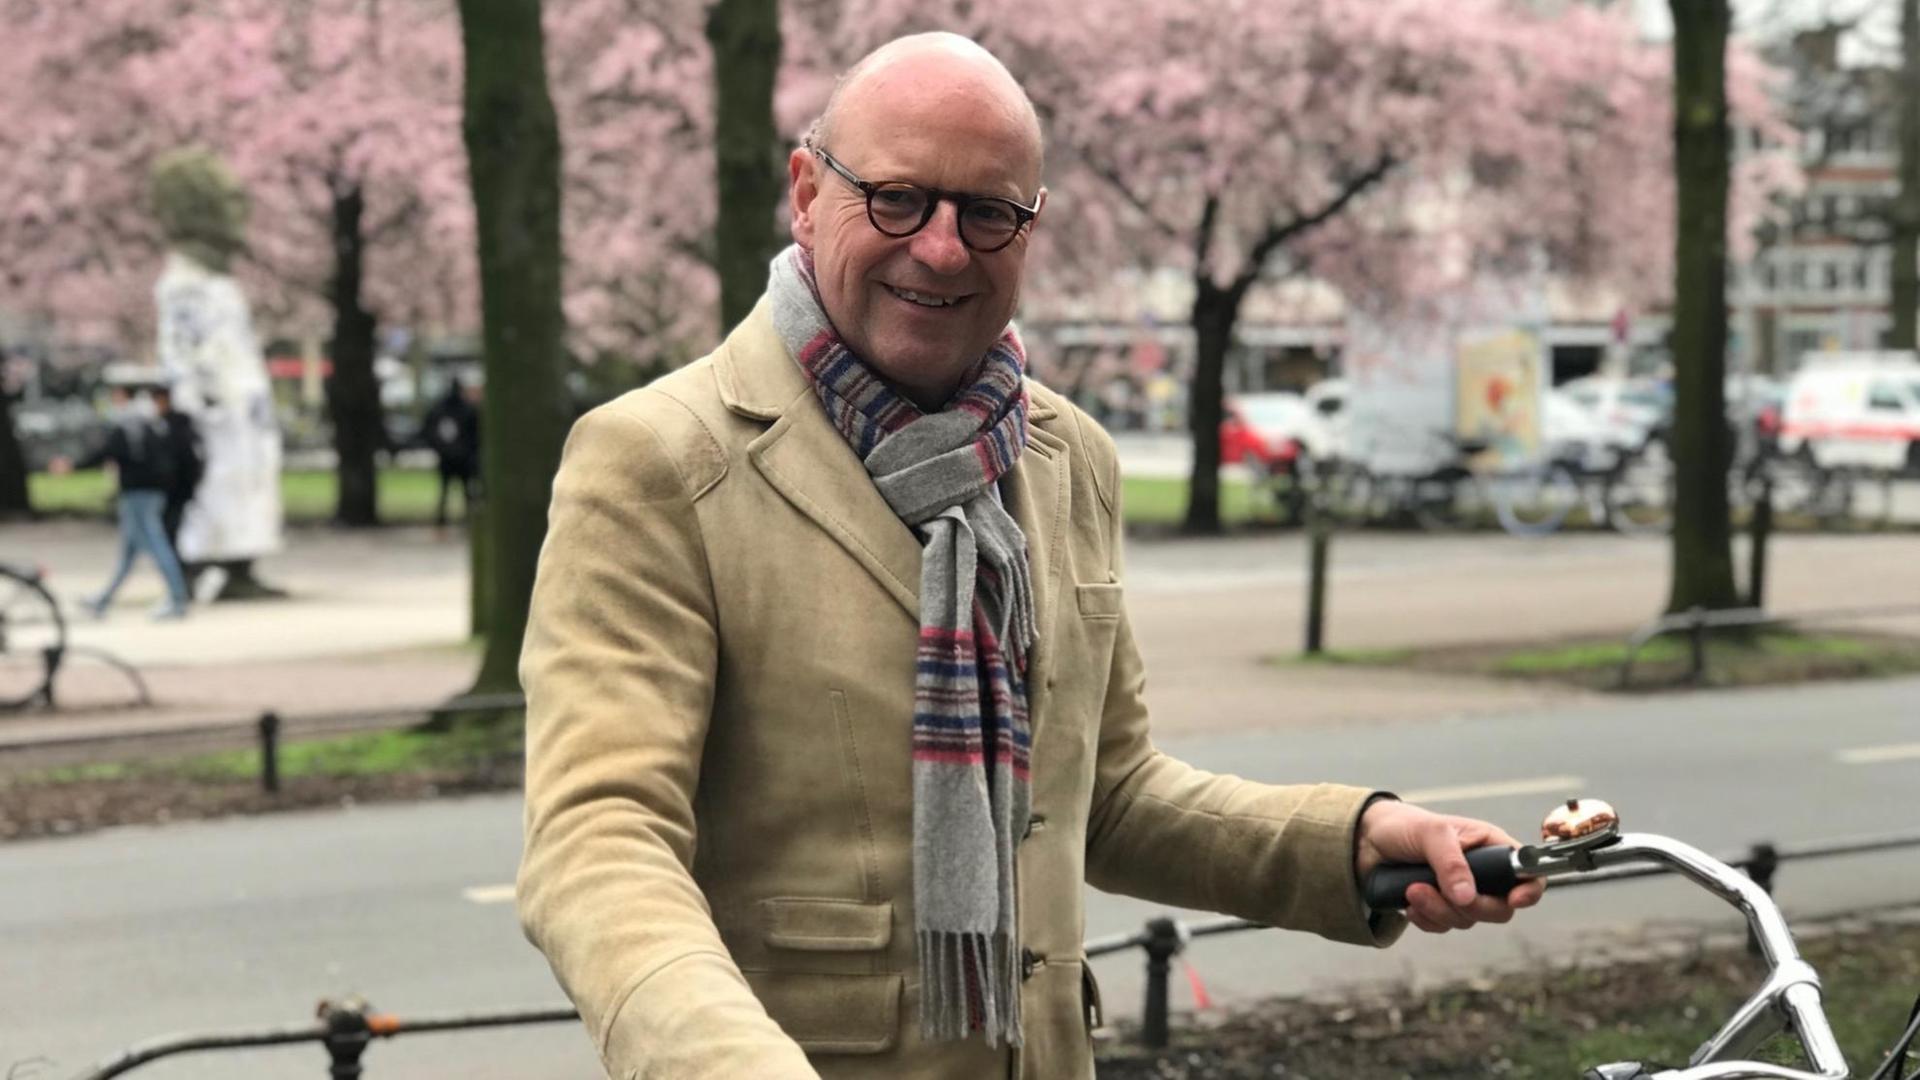 Münsters Oberbürgermeister Markus Lewe wünscht sich, dass bald jeder zweite in der Stadt mit dem Fahrrad unterwegs ist. In vielen niederländischen Städten ist das bereits der Fall.